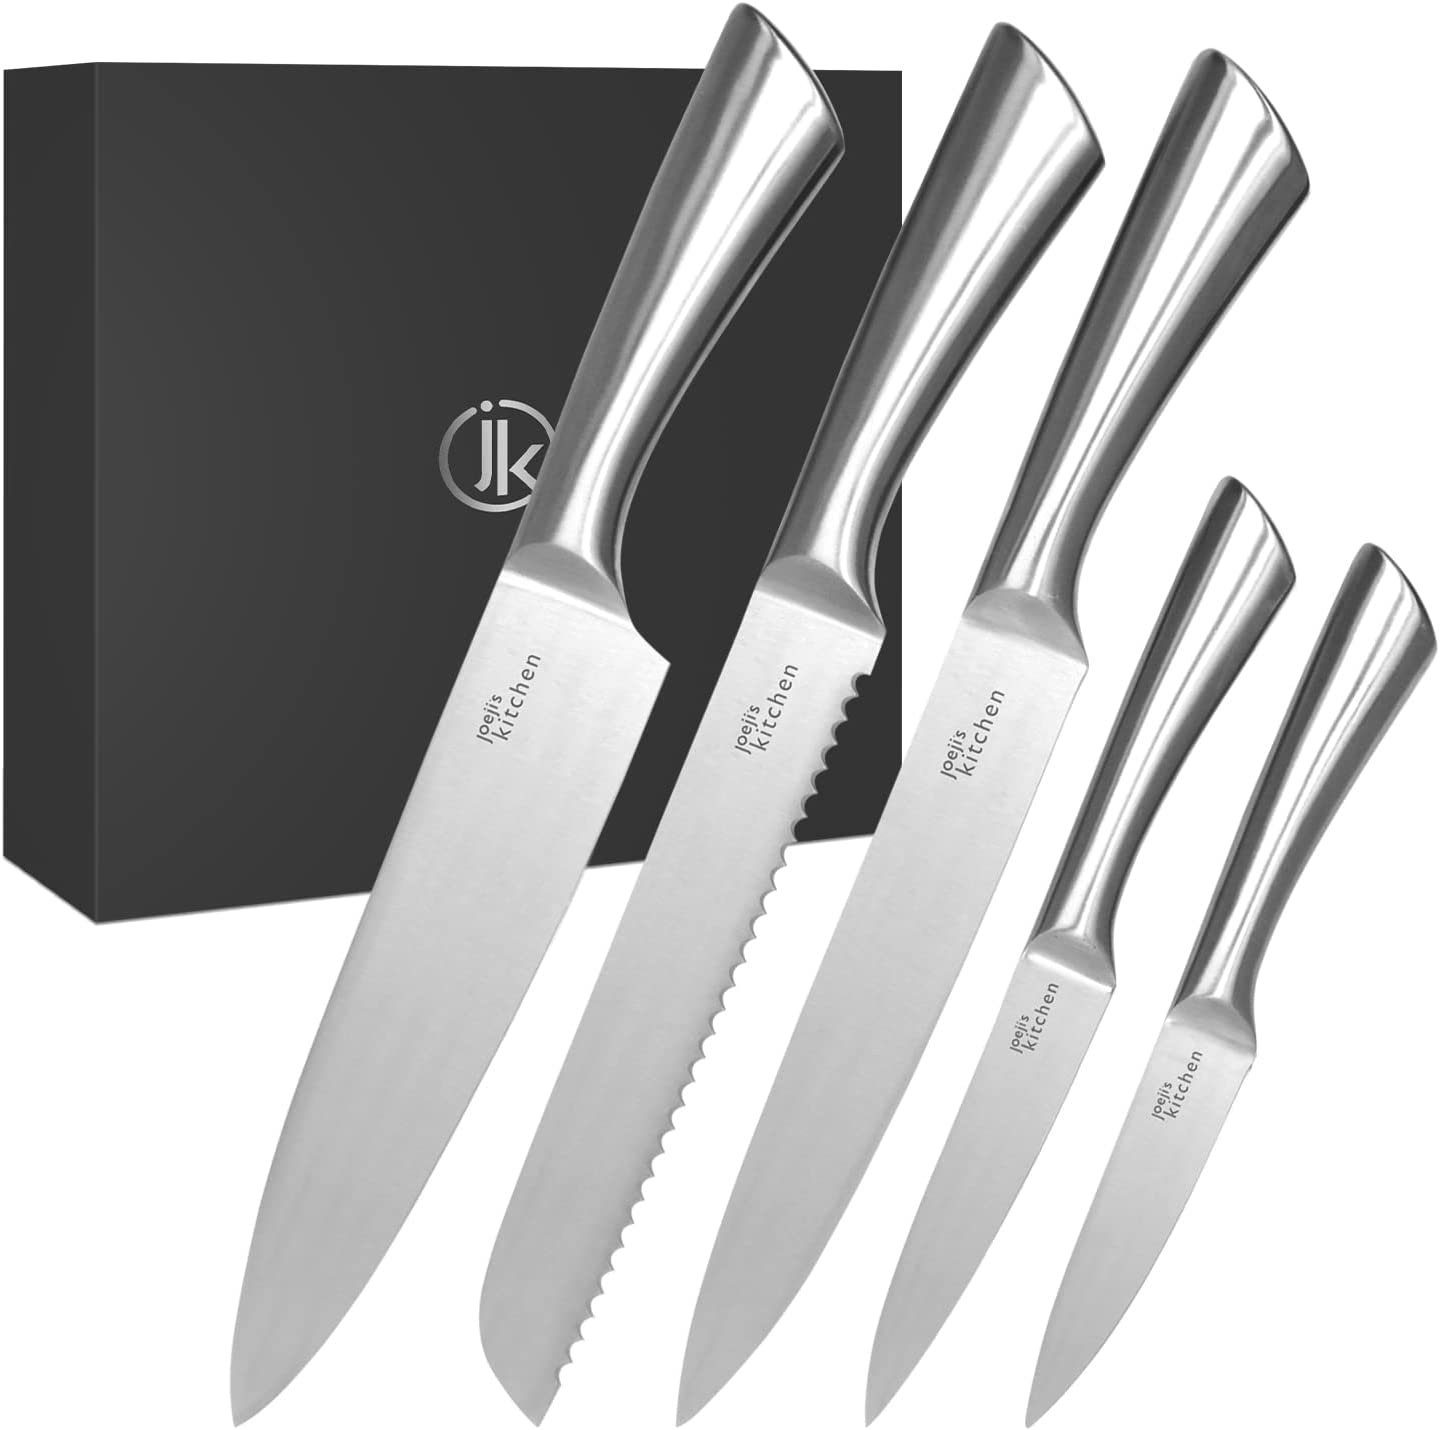 Universalküchenmesser Set - KITCHEN 5-in-1 Messerset JOEJI’S Küchenmesser Scharfe Edelstahl aus